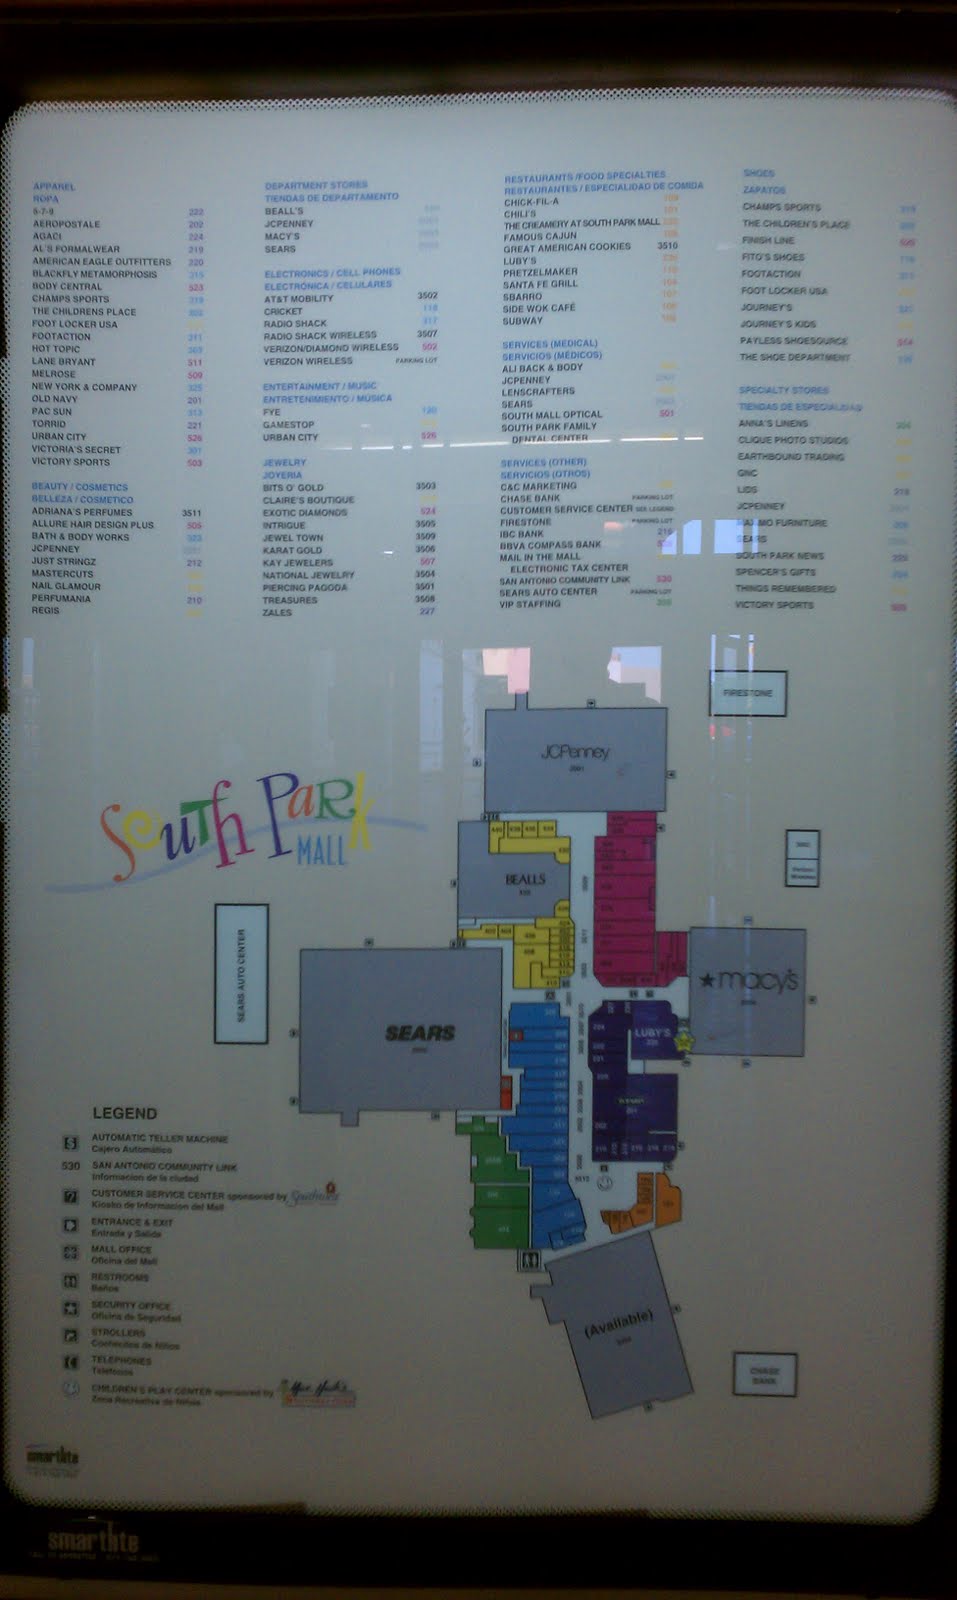 Map of South Park (circa 2003) : r/southpark